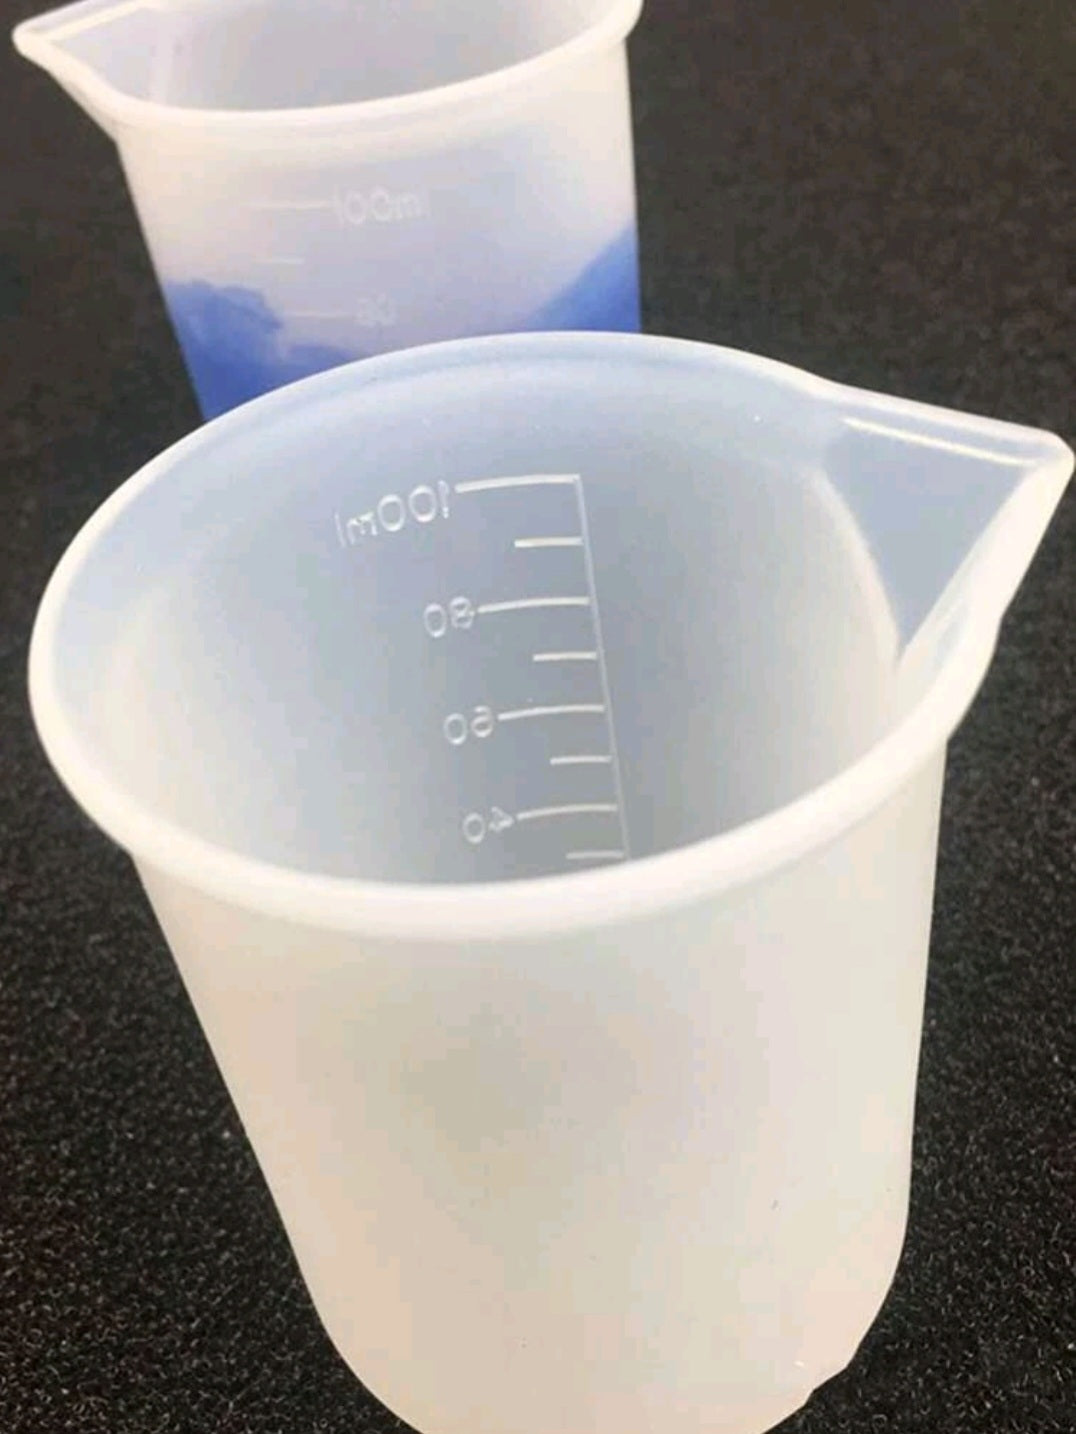 Bicchieri Dosatori in Silicone 2-Pezzi da 100ml per cera / resina epossidica - Bottega delle creazioni